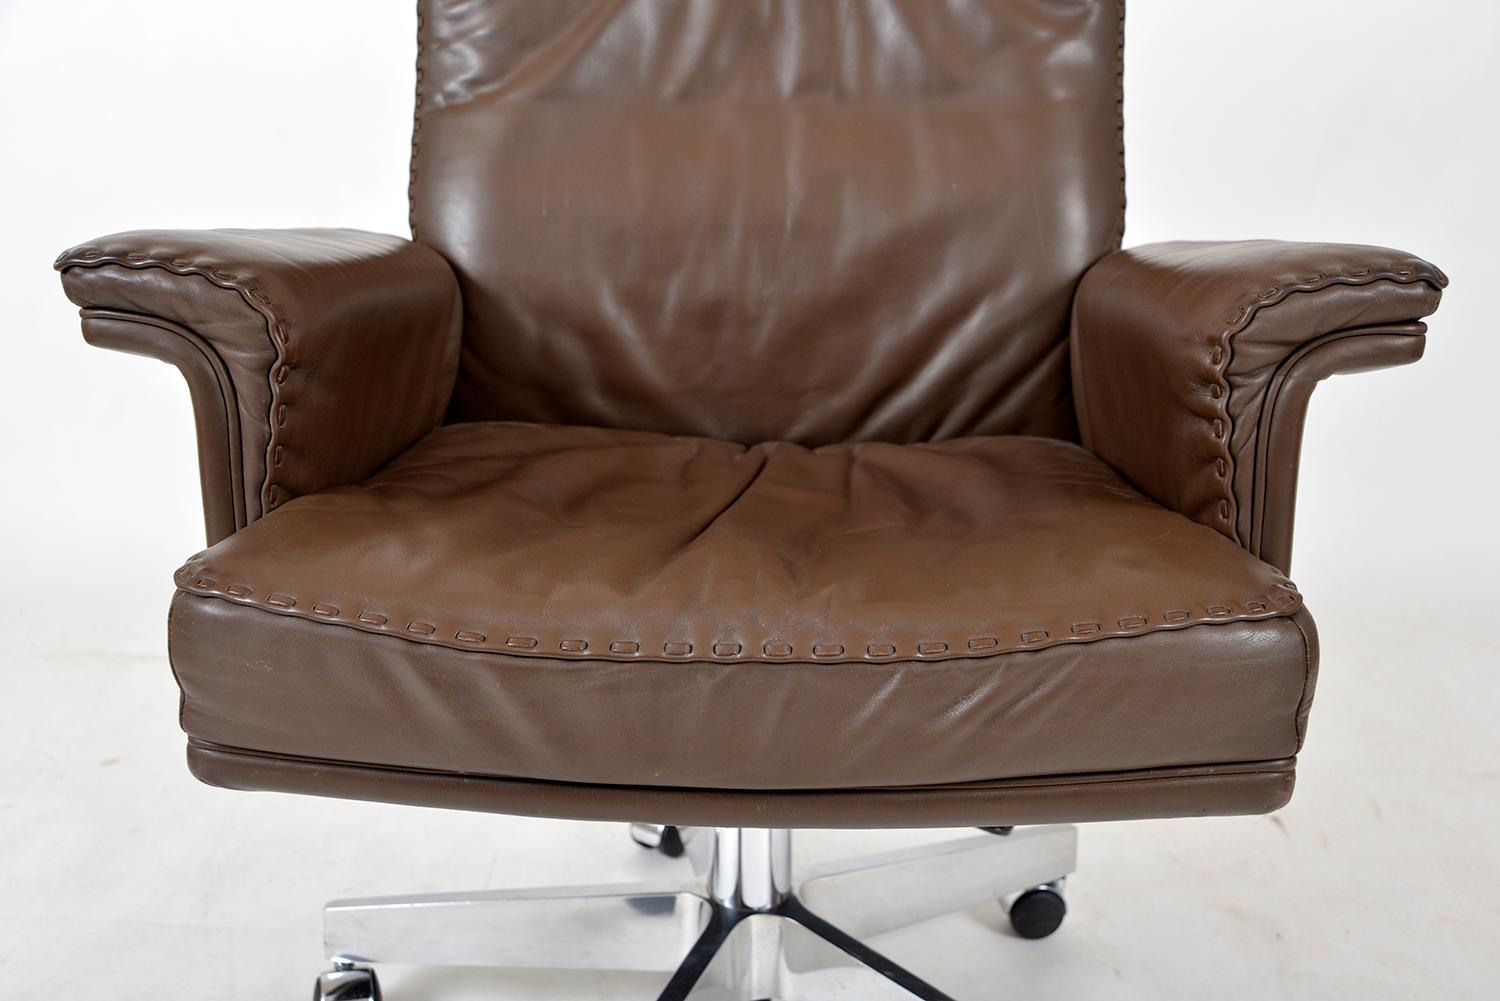 1970s Swiss De Sede Ds 35 Executive Swivel Leather Office Chair Armchair Castors 2